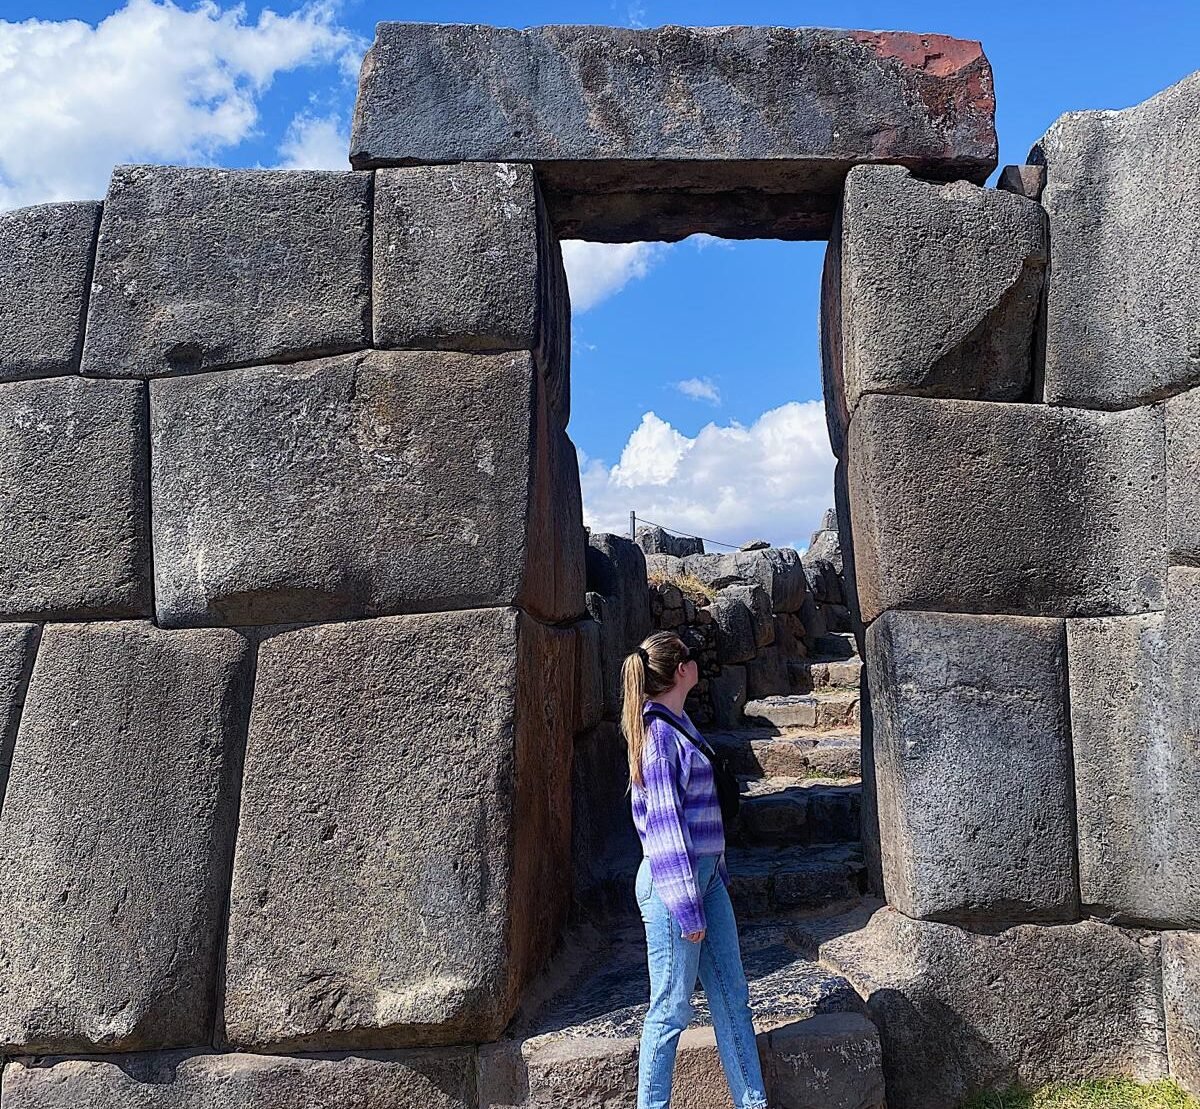 Itinerario de 7 días para descubrir el Valle Sagrado de los Incas. De Cuzco a Machu Picchu